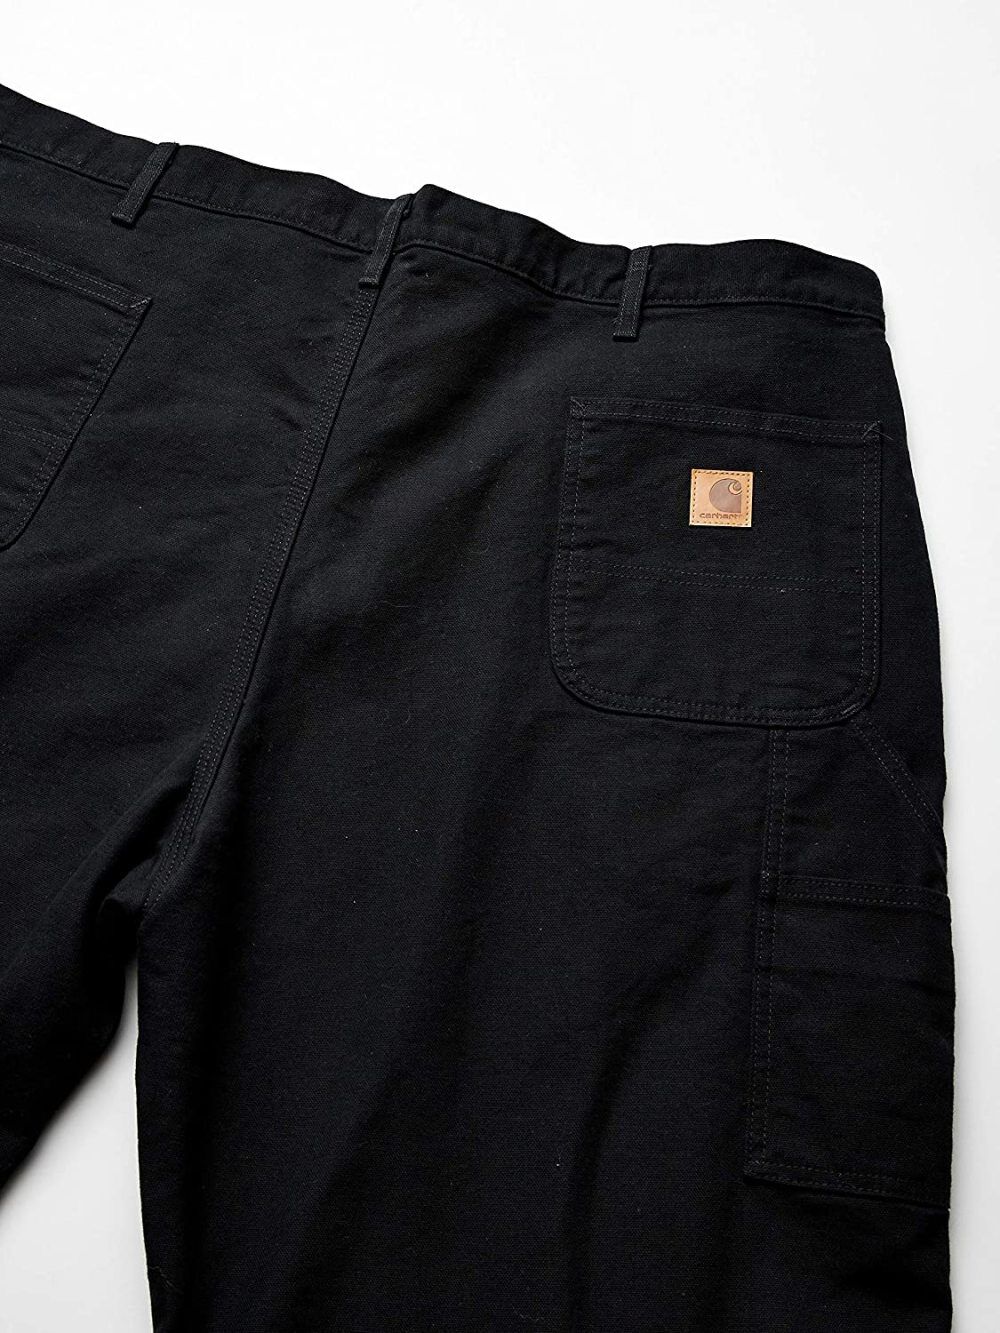 Carhartt Men's Duck Dungaree Flannel Lined 33x30 Black Work Pants